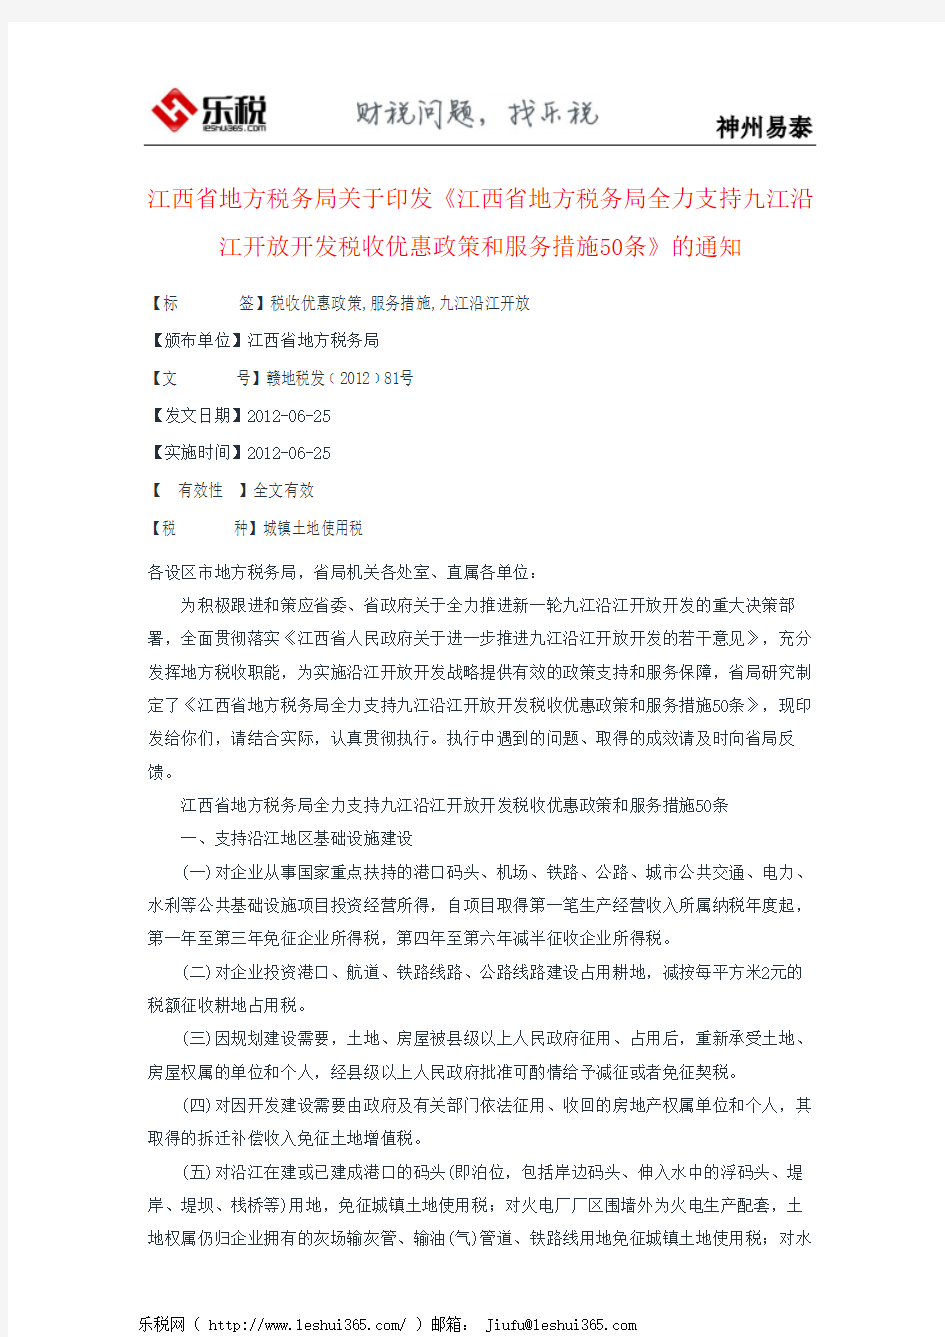 江西省地方税务局关于印发《江西省地方税务局全力支持九江沿江开